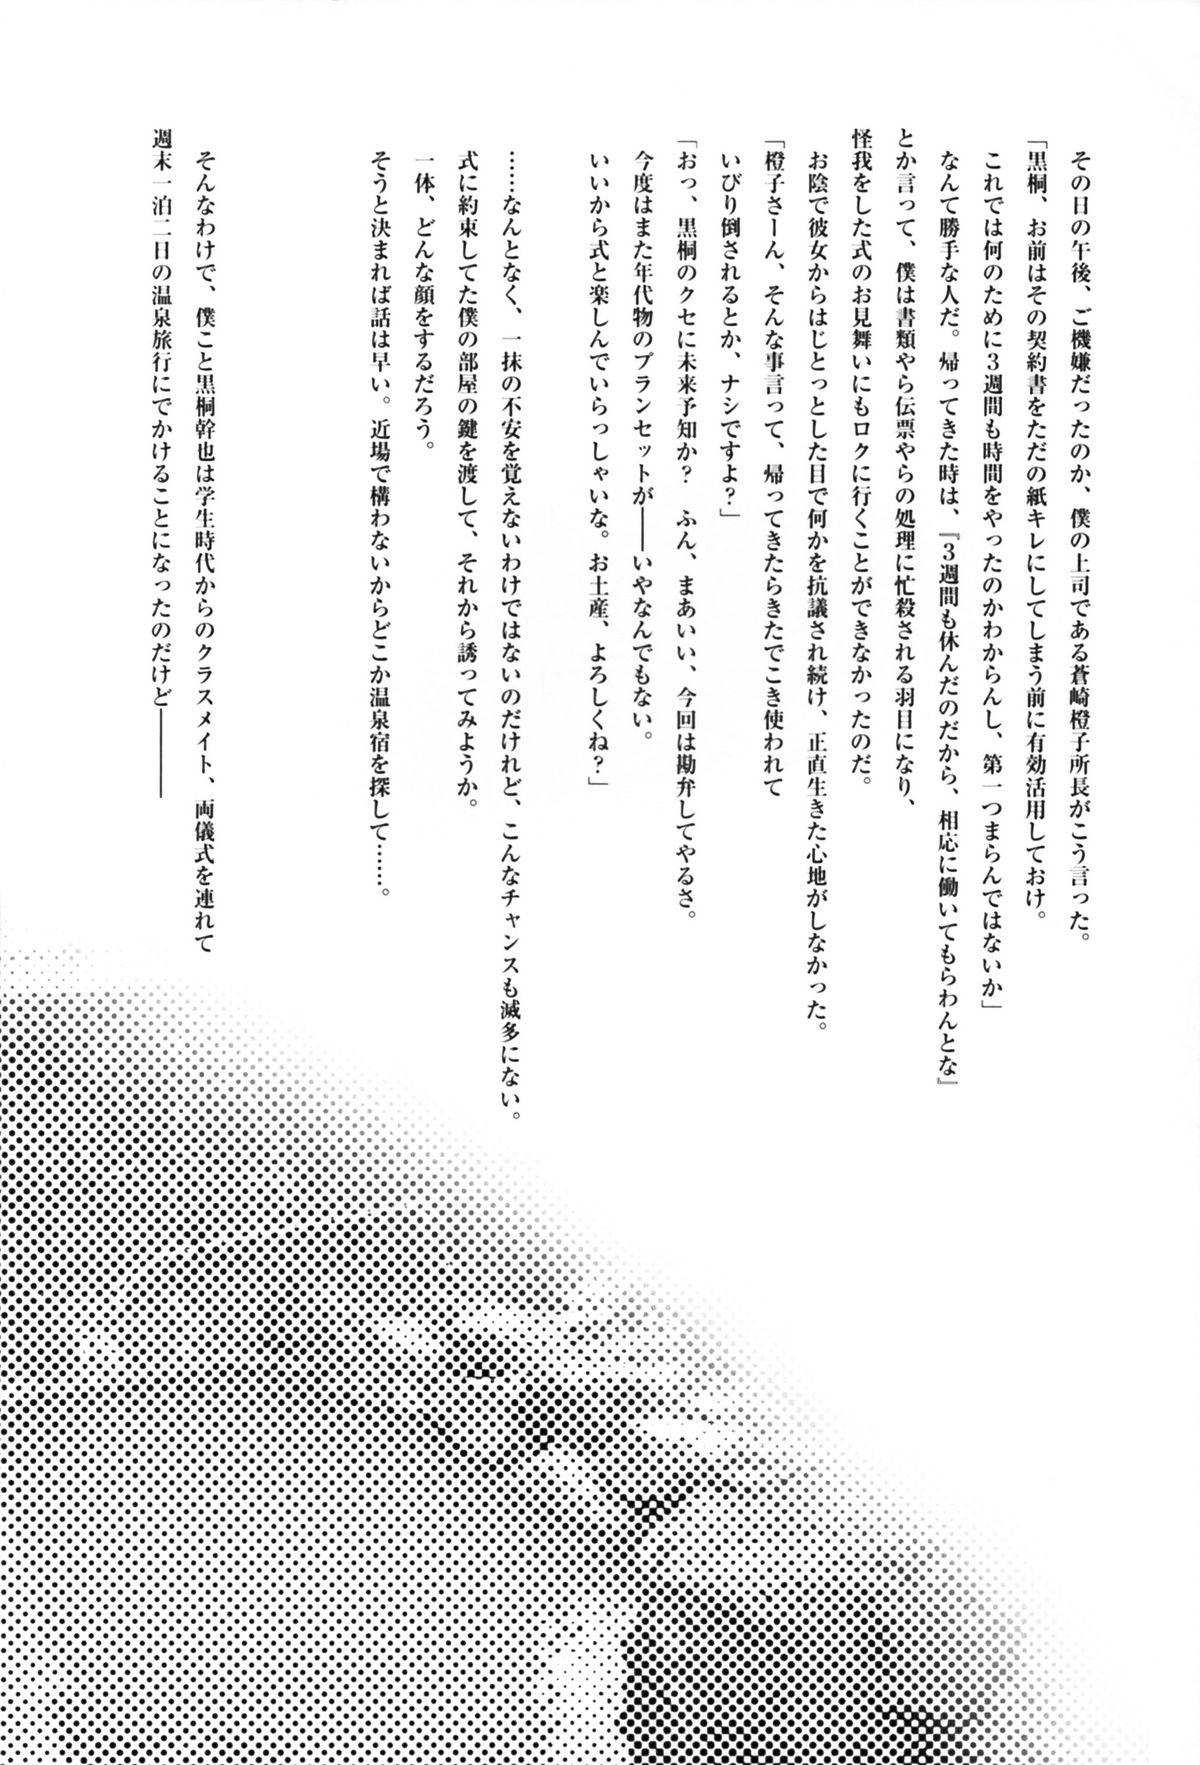 Old Young Futari no Dokidoki Onsen Ryokou - Kara no kyoukai Romantic - Page 4